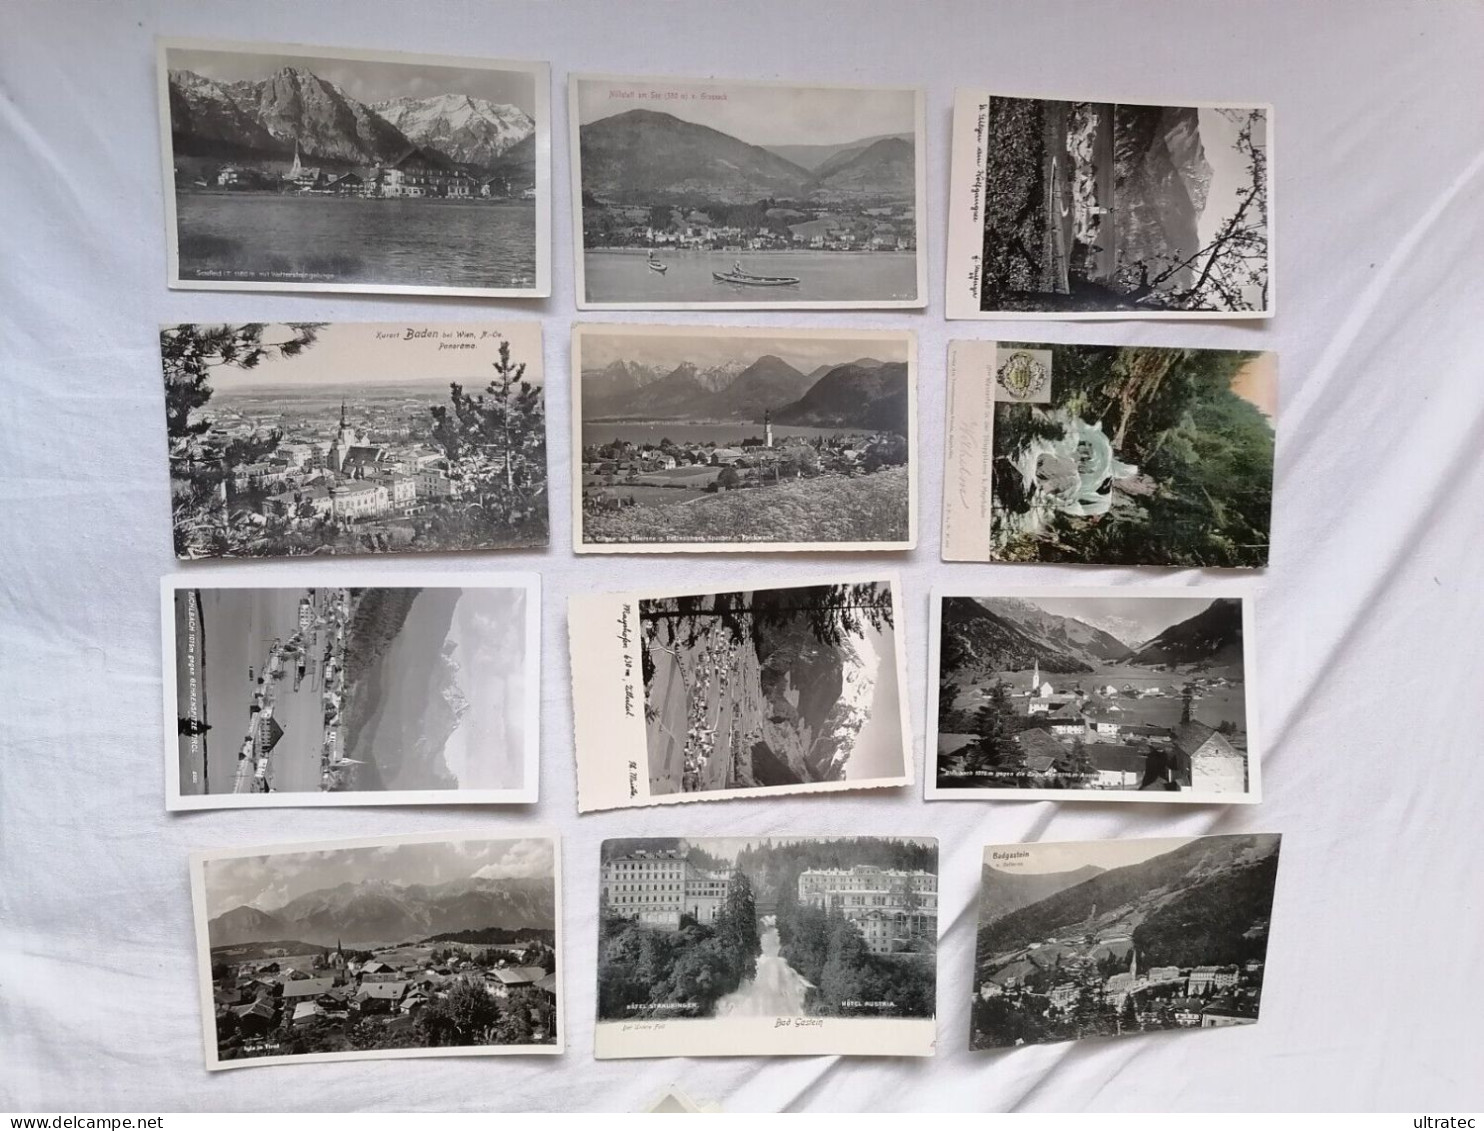 130 Stück alte AK Postkarten "ÖSTERREICH" Ansichtskarten Lot Sammlung Konvolut